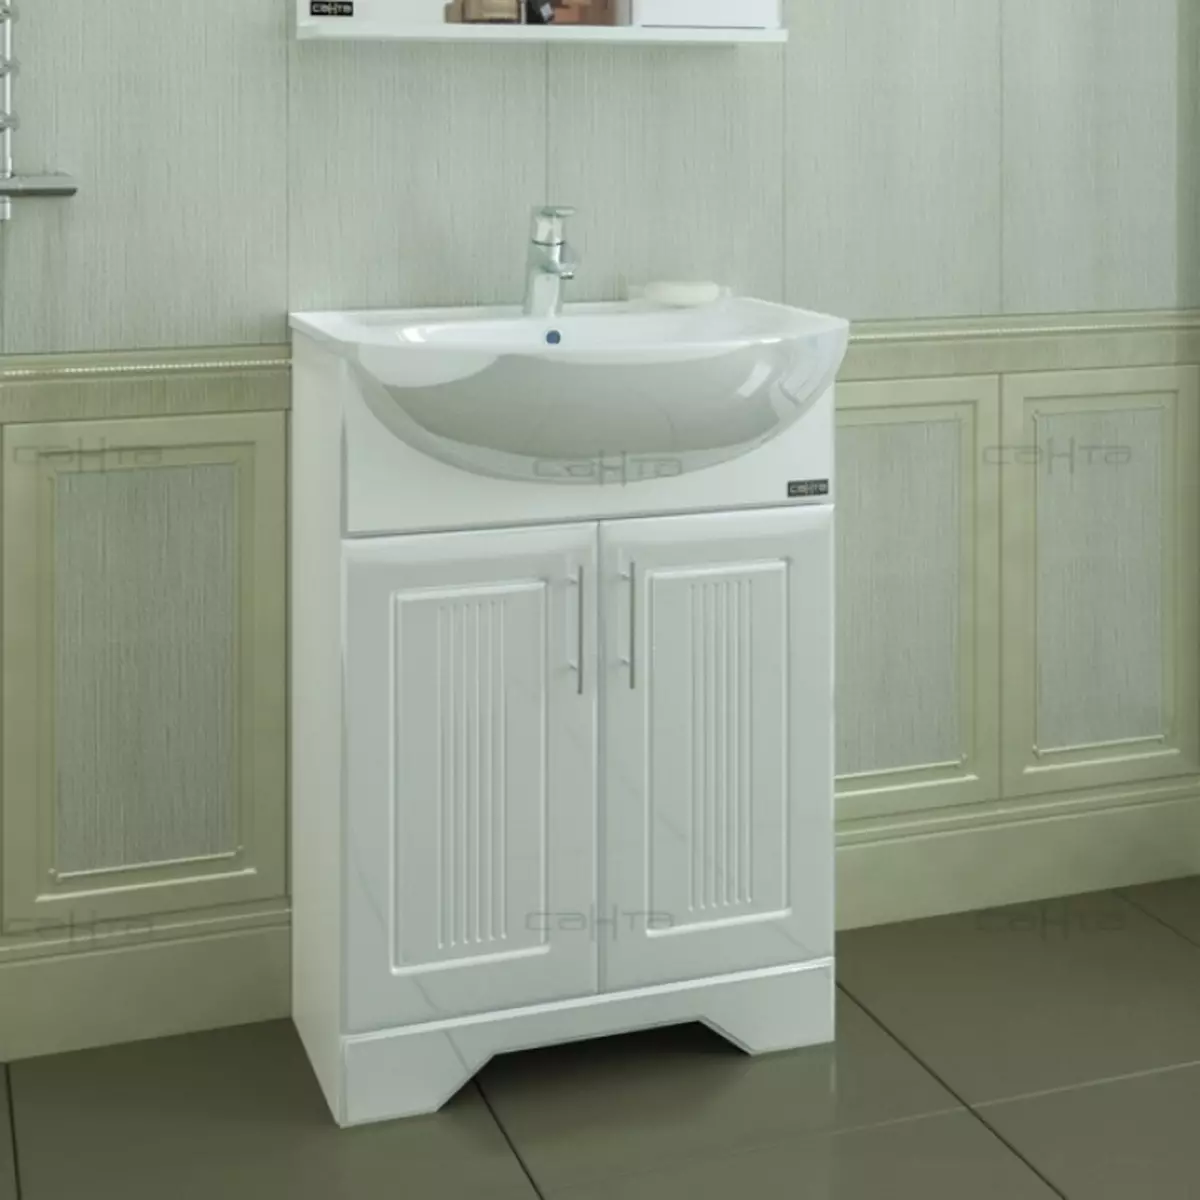 Jedhing ruangan ruangan: nganggo sink lan tanpa, ukuran 50-60 cm lan 70-80 cm, 90-80 cm, 90-100 cm lan ukuran kamar mandi liyane 10396_6